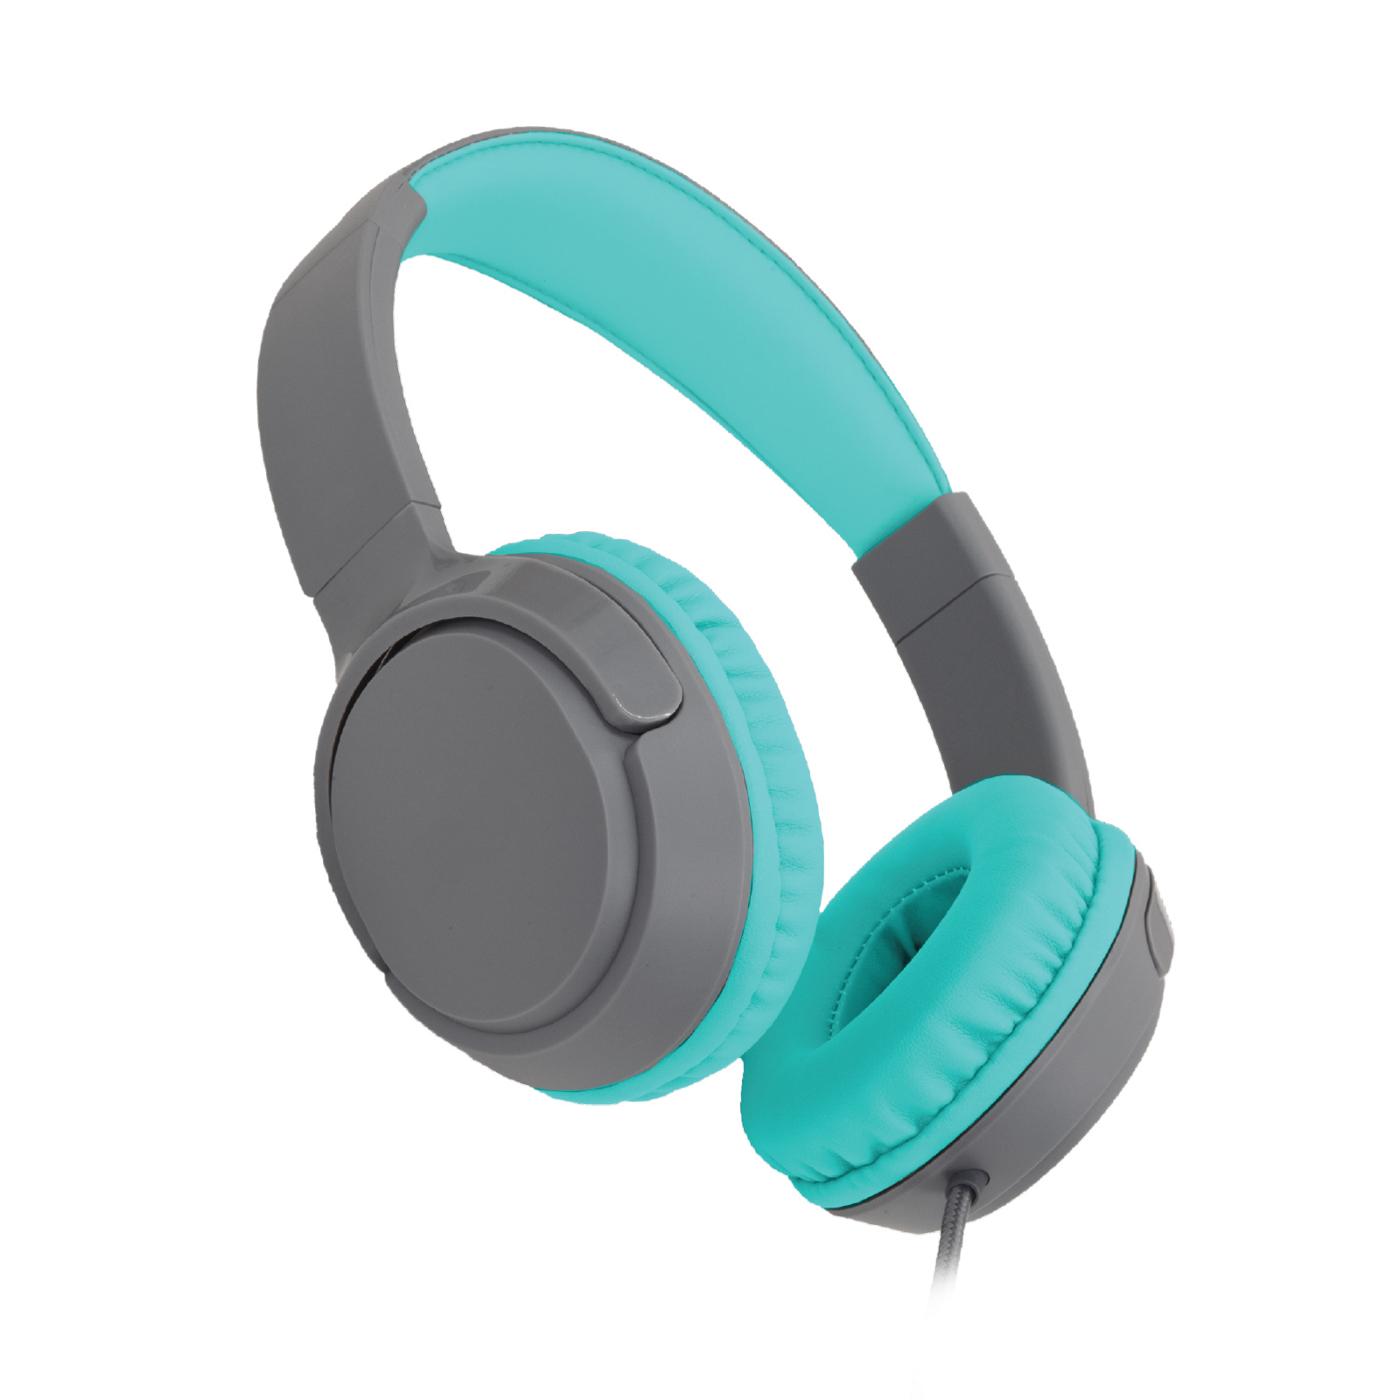 Helix ProJammers Kids Headphones - Gray & Teal; image 2 of 2